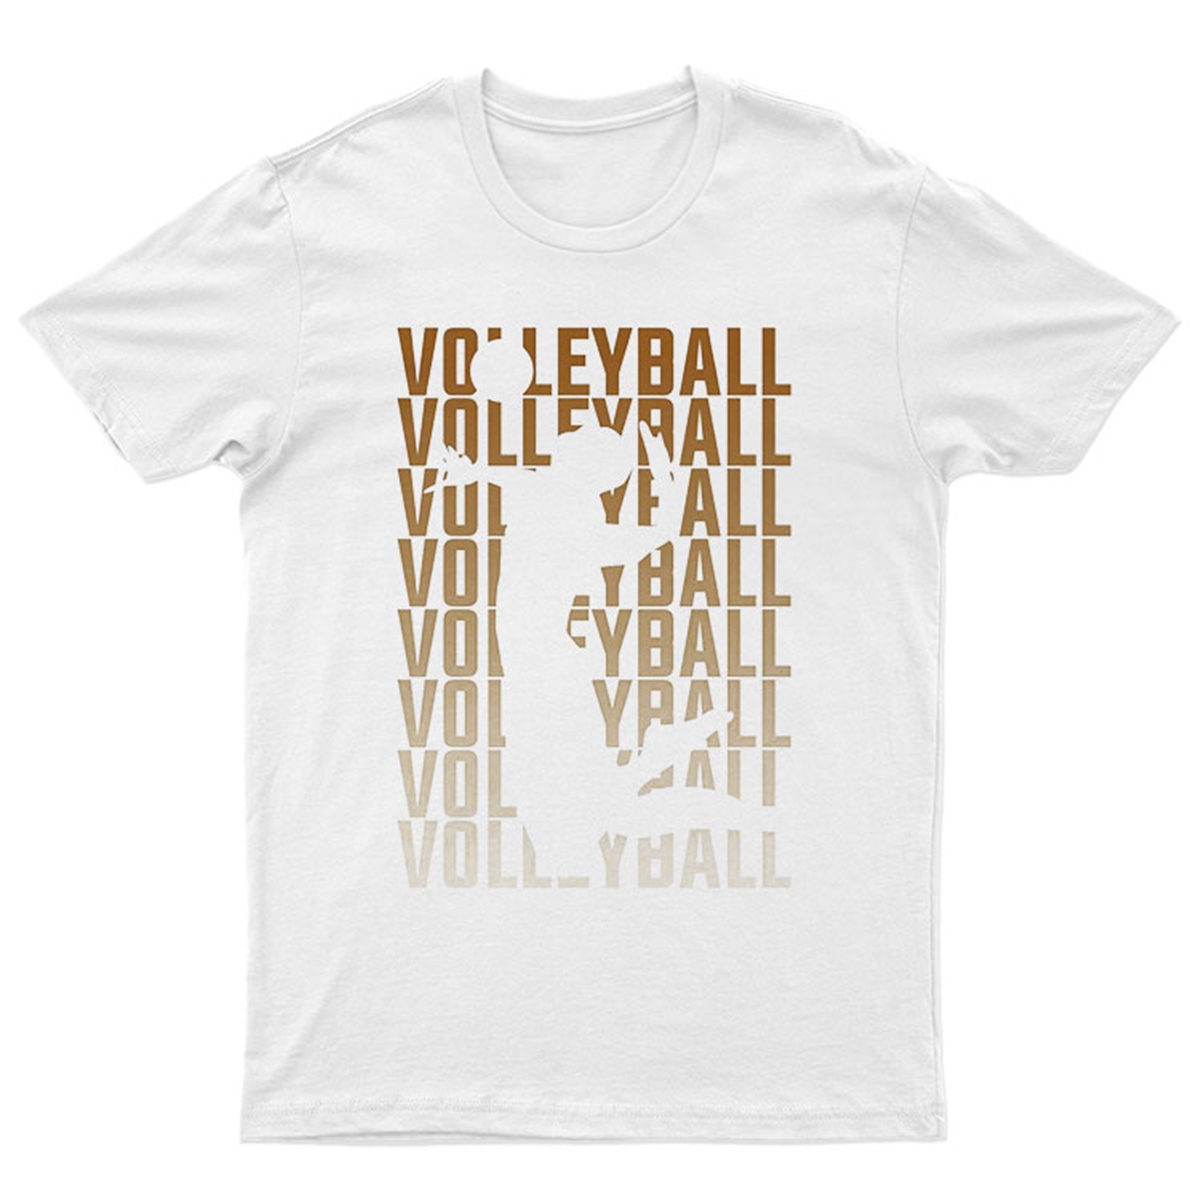 Voleybol Tişörtleri | Voleybol Tişört | Voleybol Tişörtü | Voleybol T-Shirt